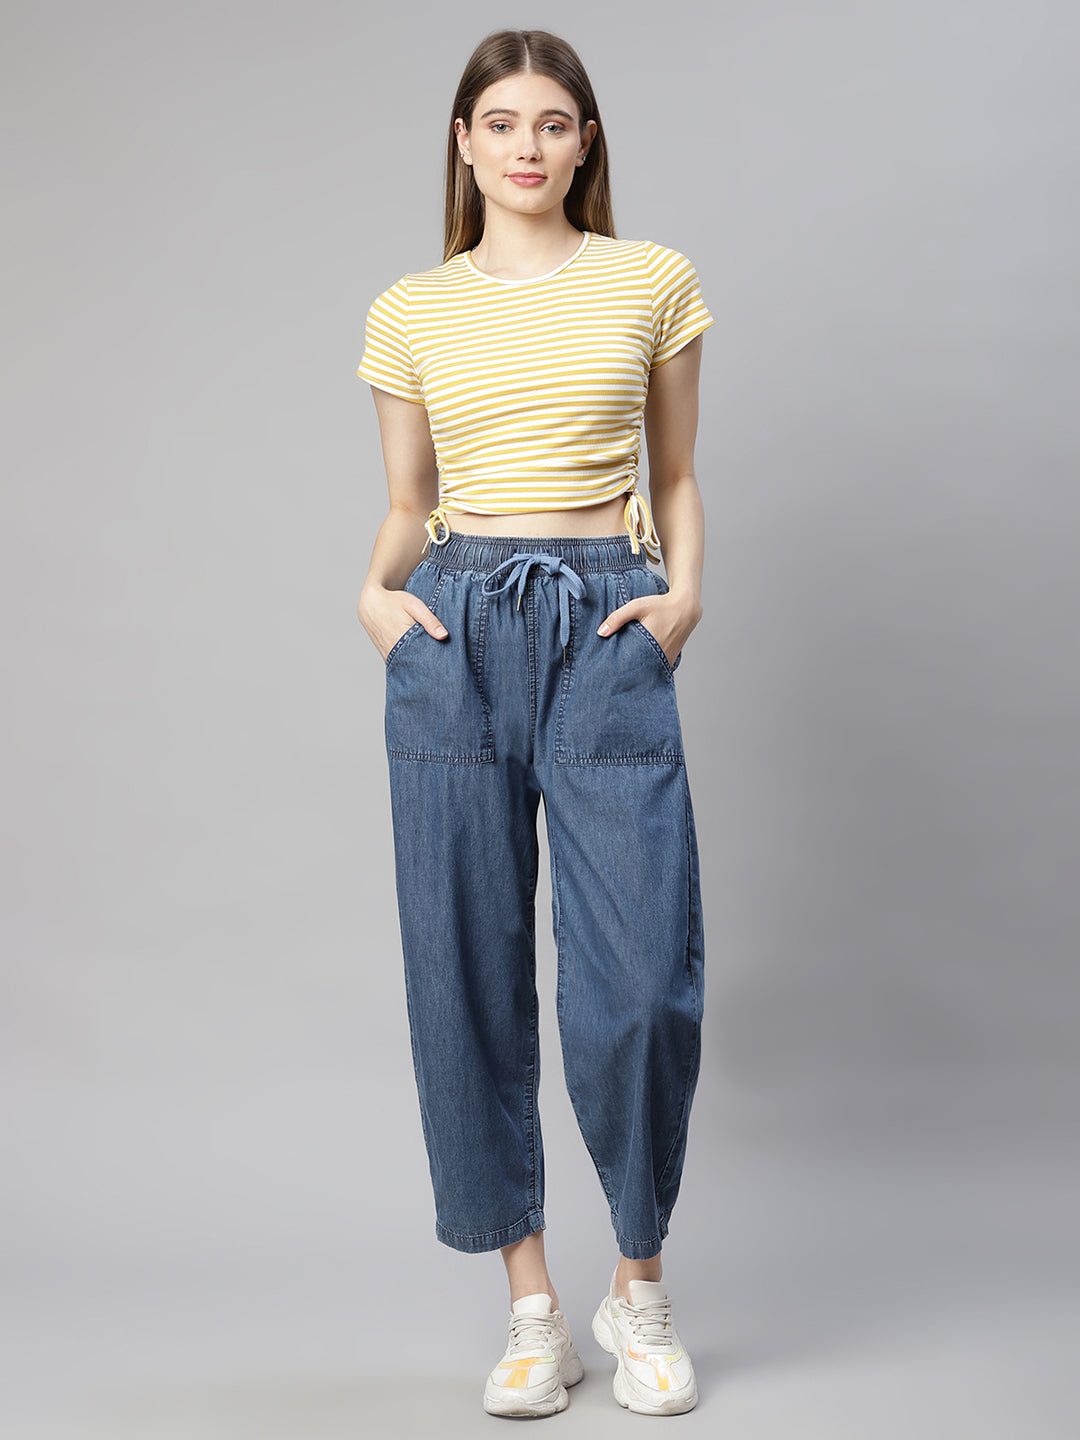 LEE LOWER ON THE WAIST Dark Blue Jean/Denim Pants Women's PETITE 6P Flap  Pockets | eBay